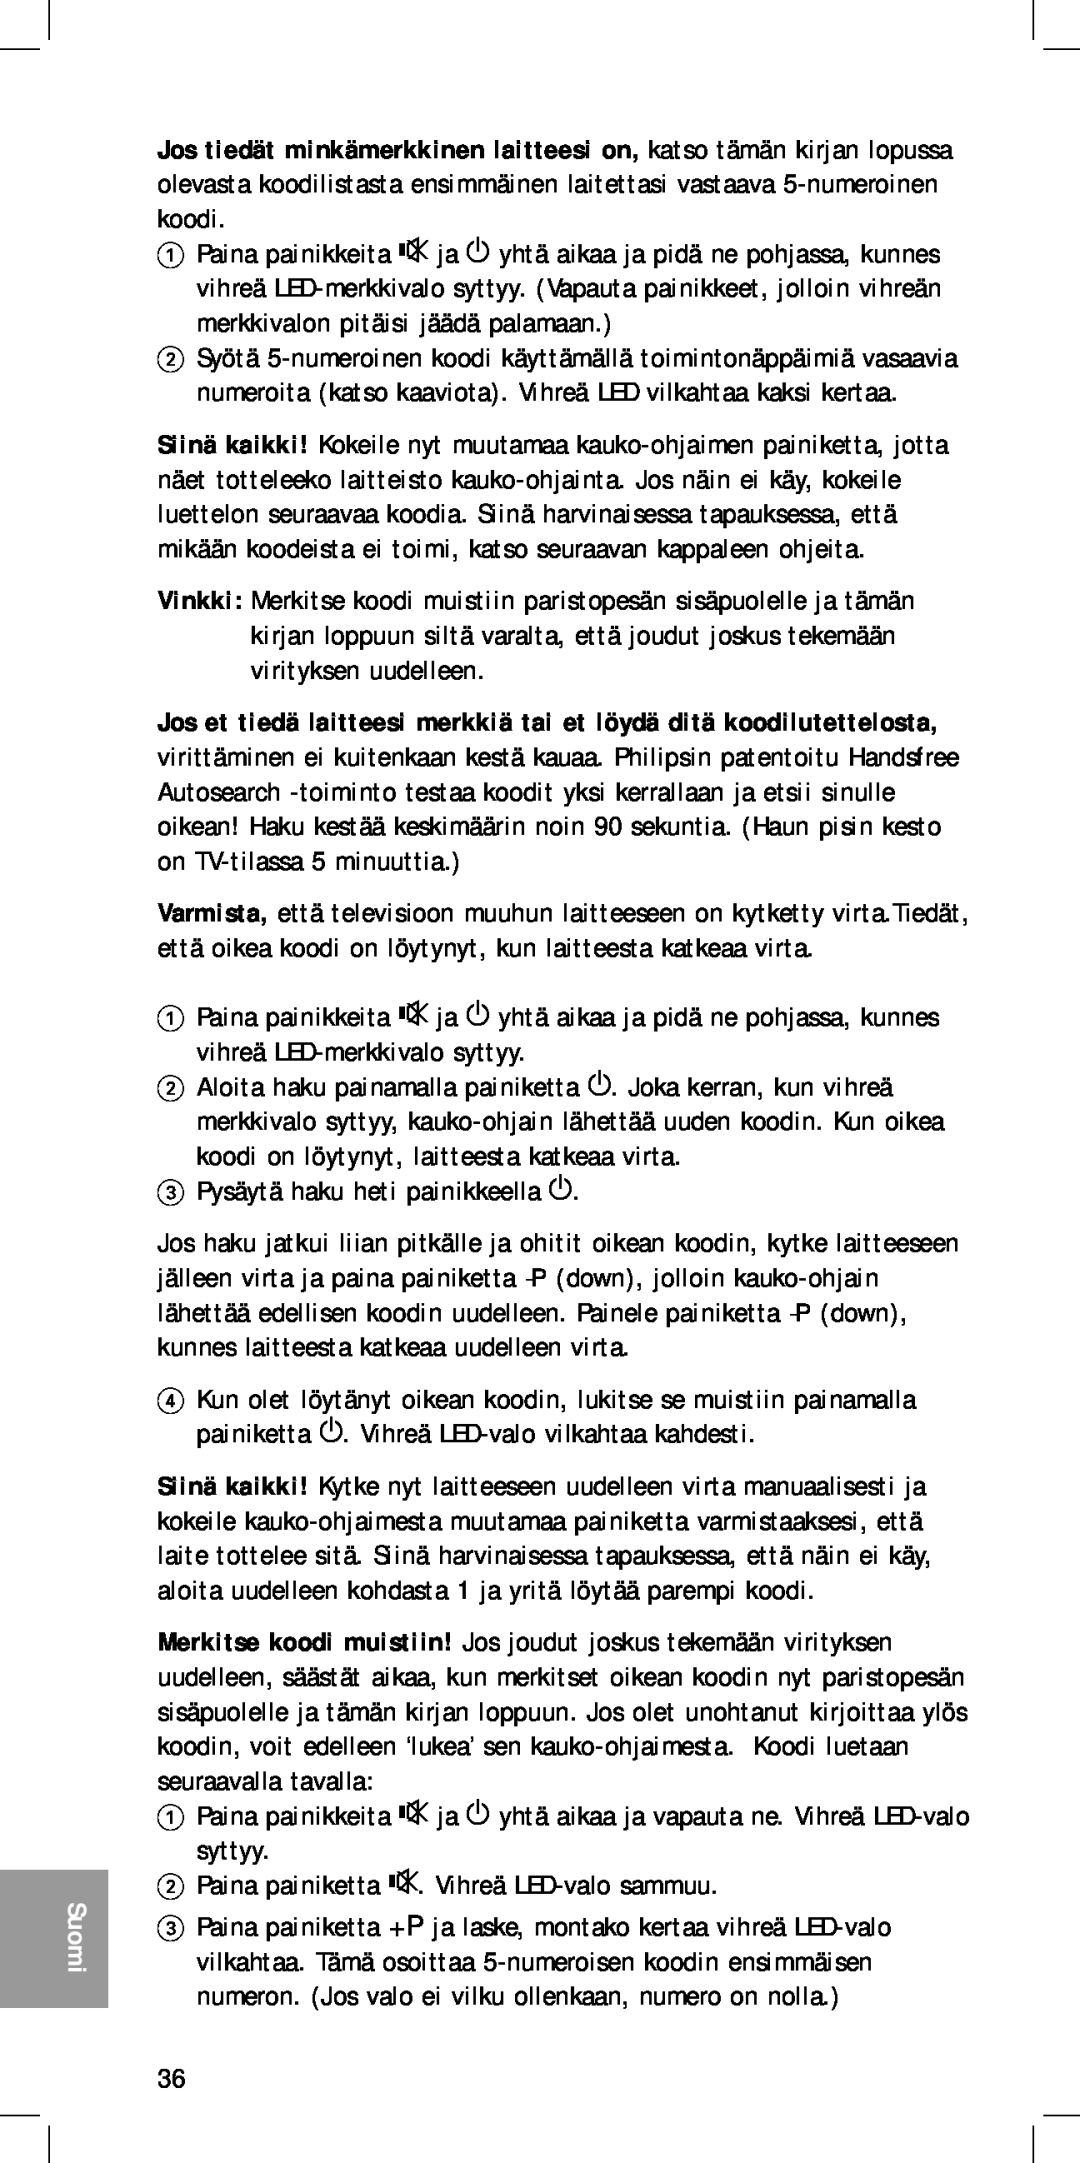 Philips MC-110 manual Suomi, Jos et tiedä laitteesi merkkiä tai et löydä ditä koodilutettelosta 